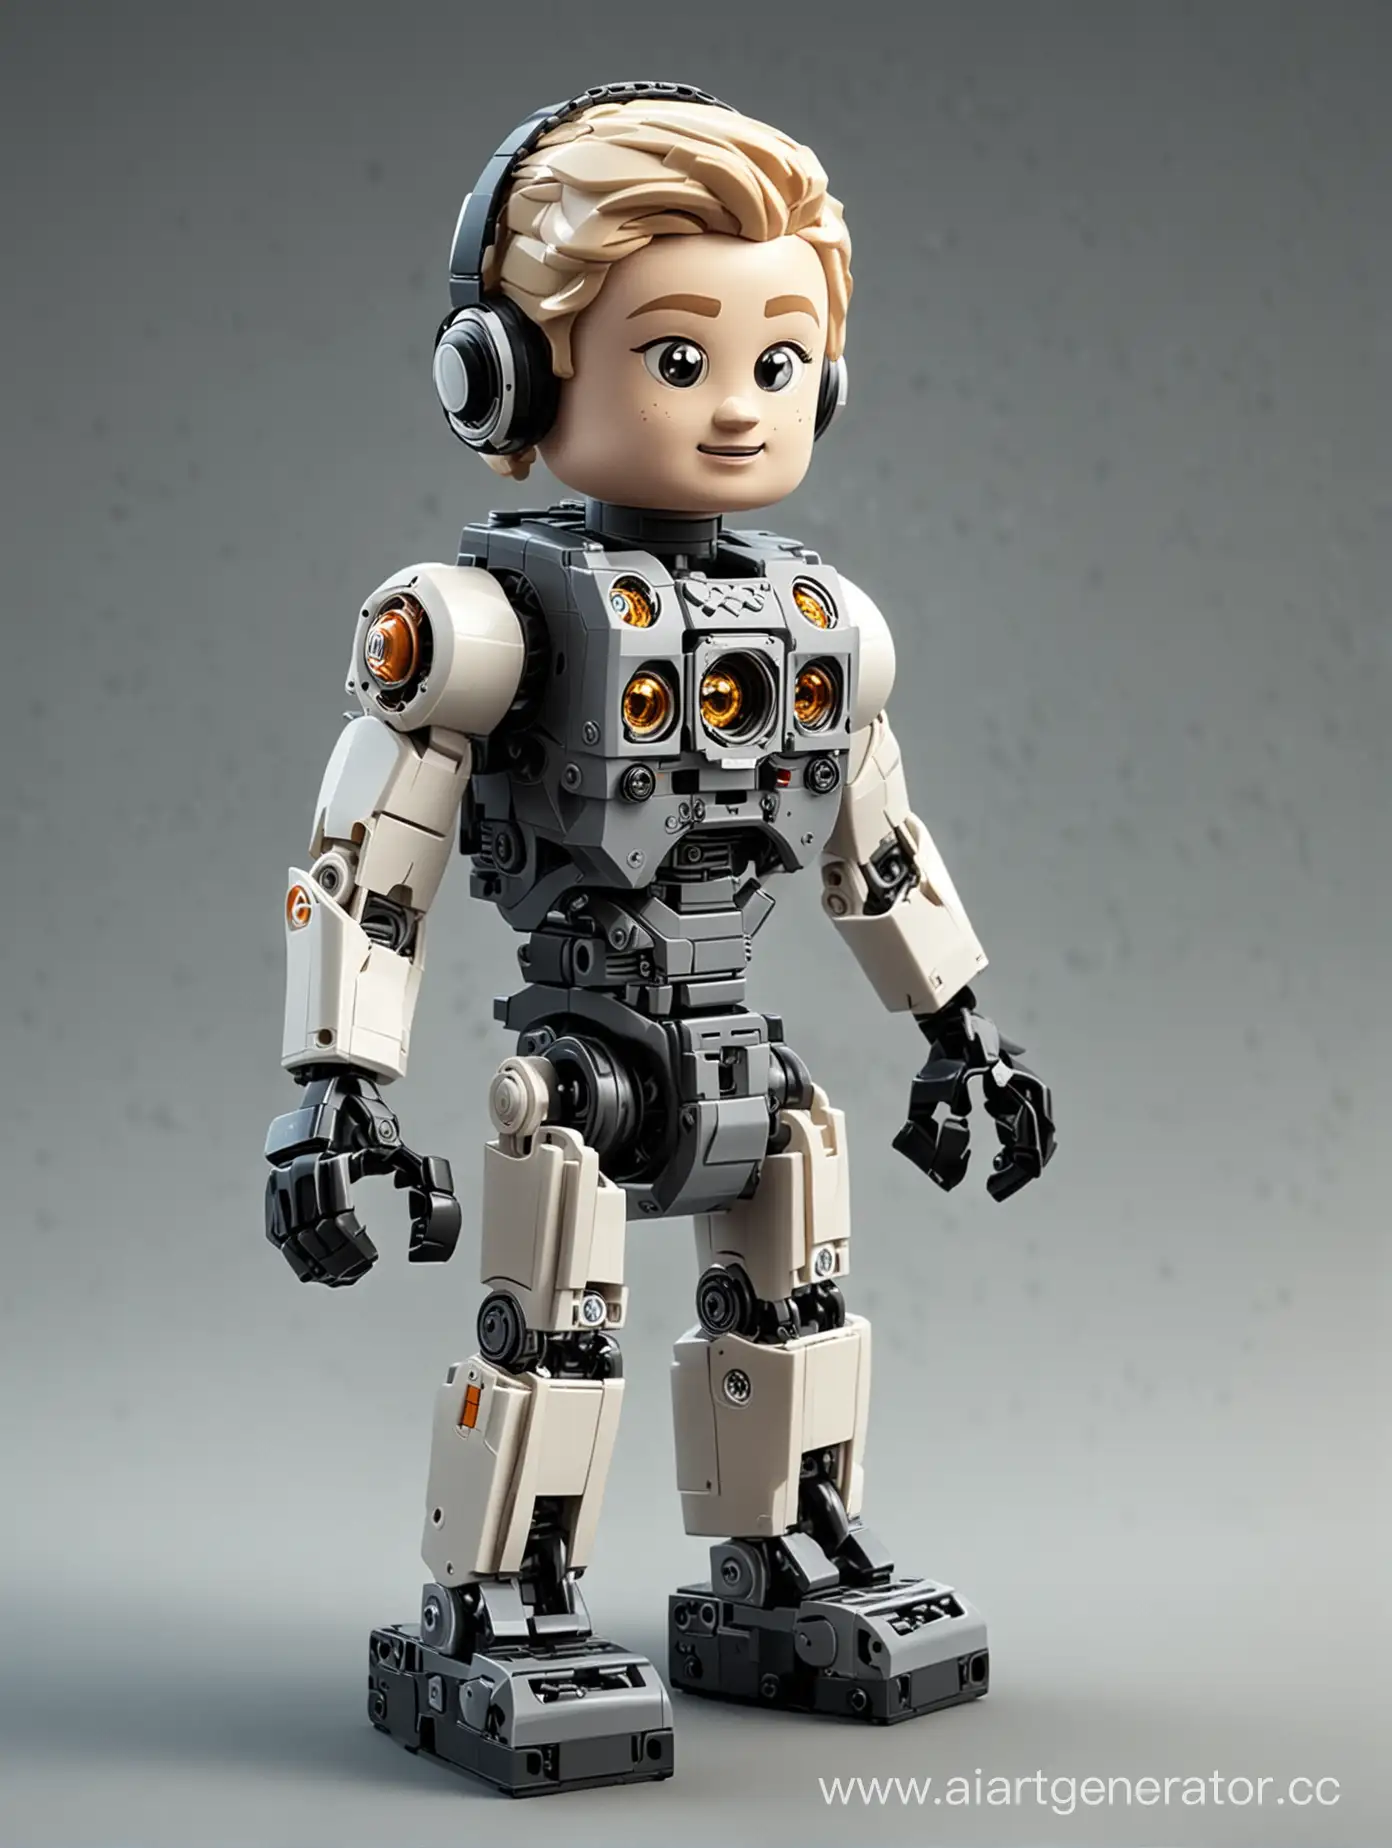 робототехника для детей lego web 2.0 с мультяшными героями